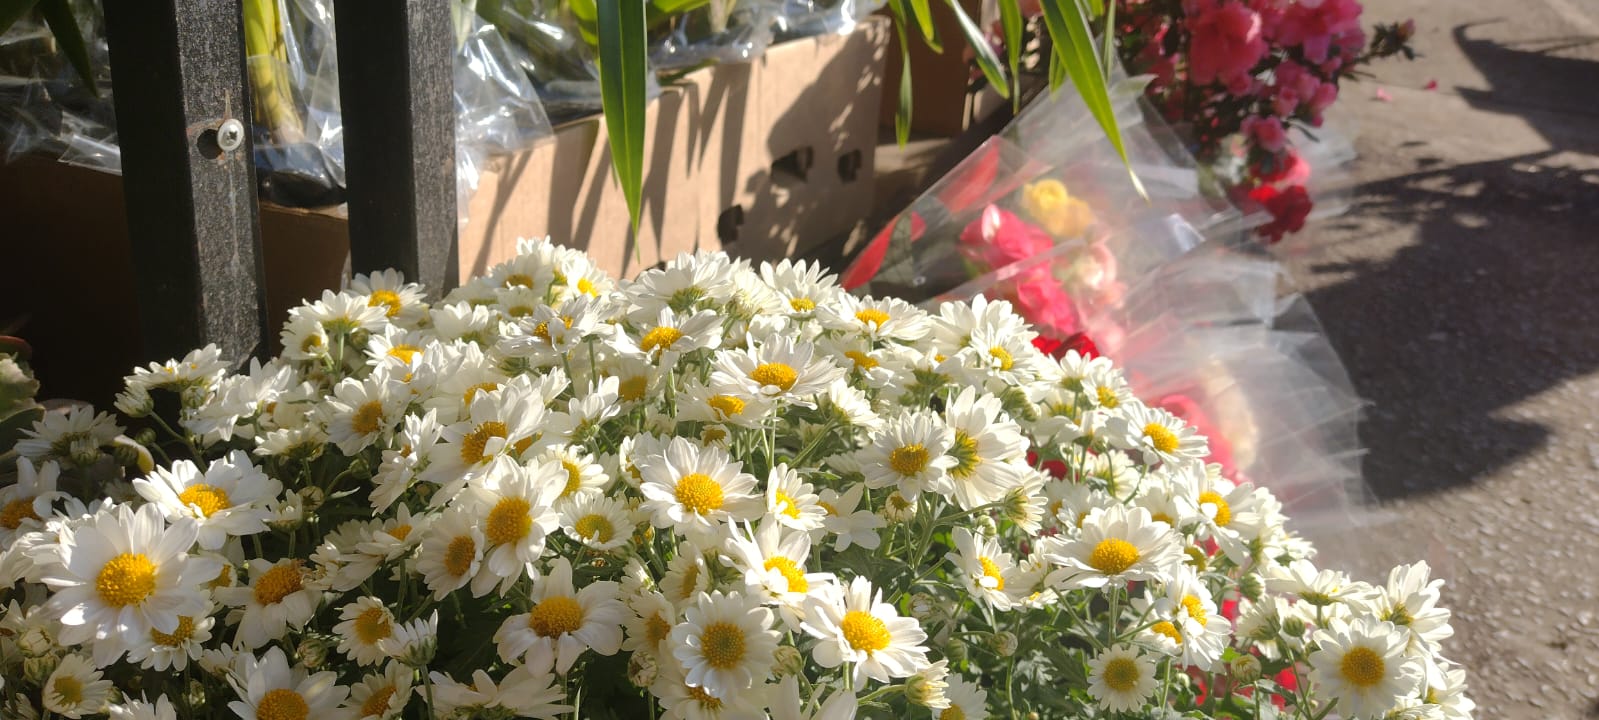 Cadeg registra aumento nas vendas de flores no Dia dos Namorados (Foto: Thalyson Martins/ Super Rádio Tupi)